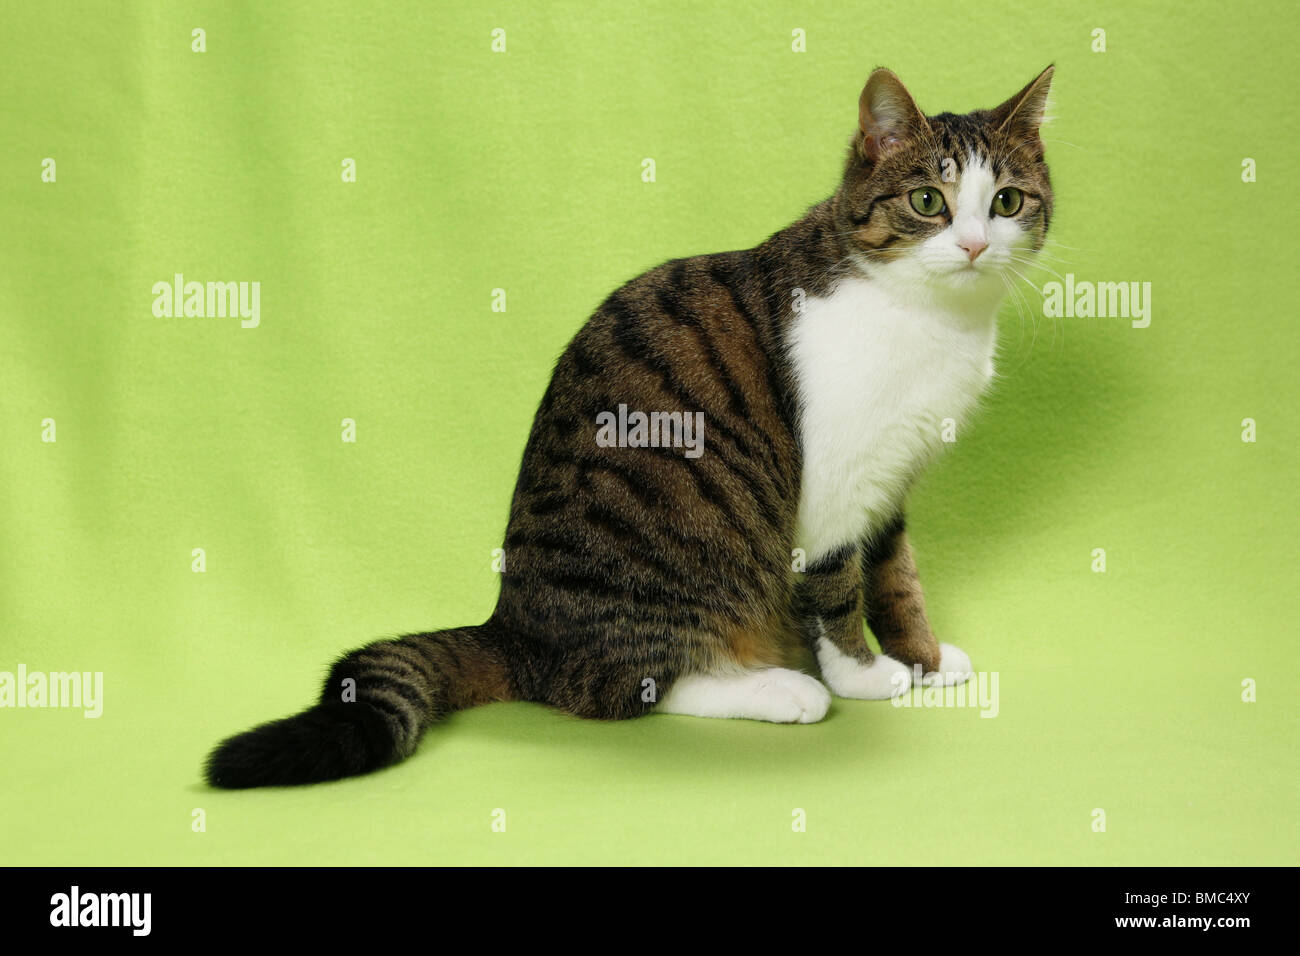 sitzende Katze / sitting cat Stock Photo